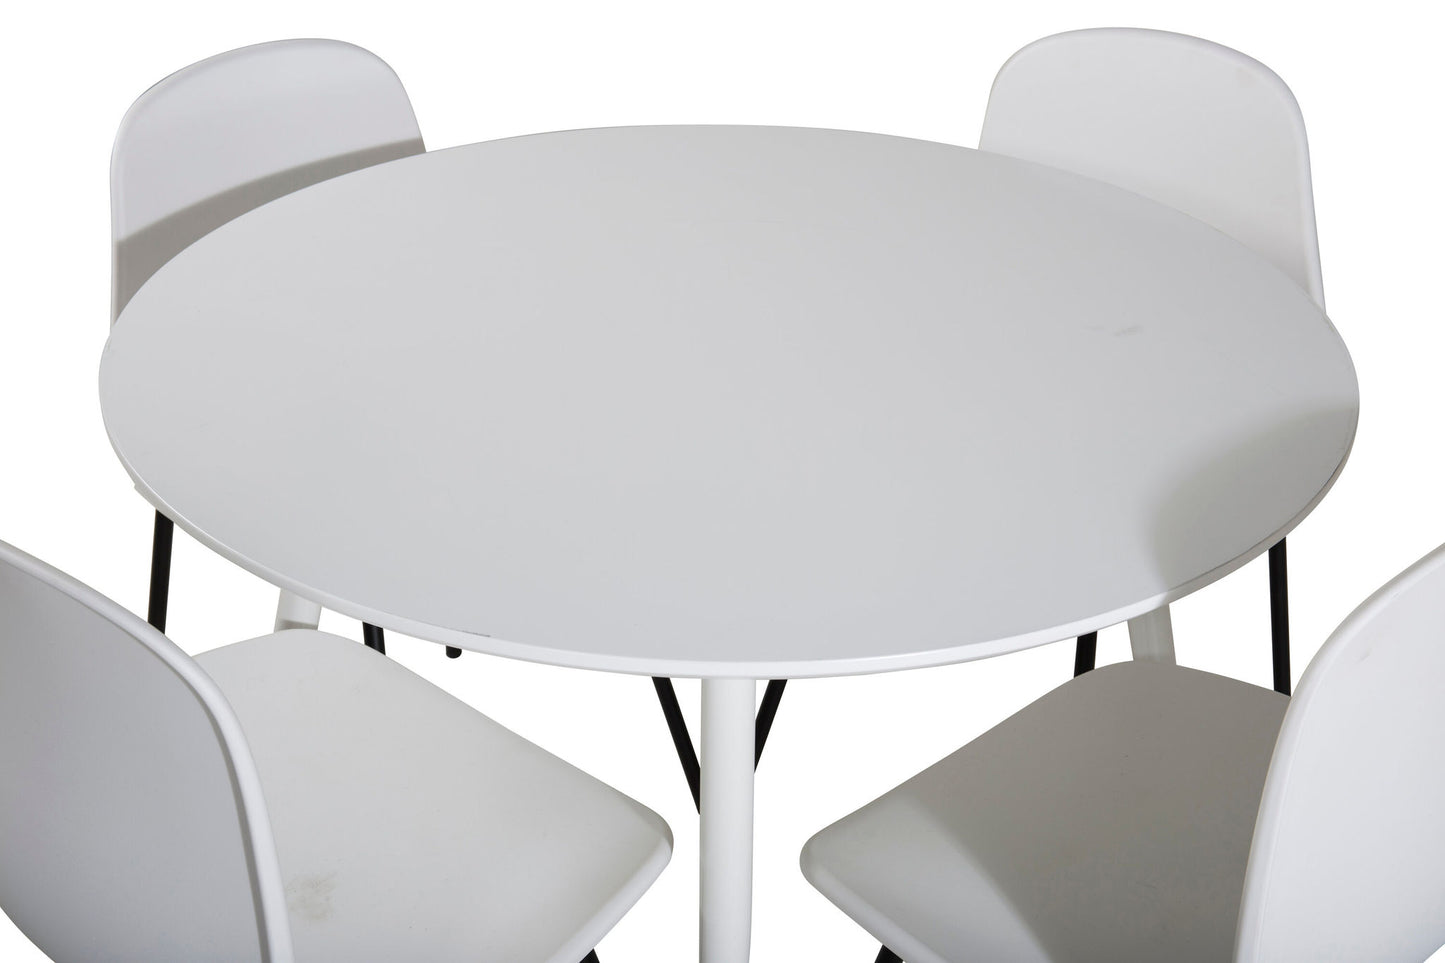 Plaza Rundt Bord 100 cm - Hvid top / Hvide ben+Arctic Spisebordsstol - Sorte ben - Hvid Plast